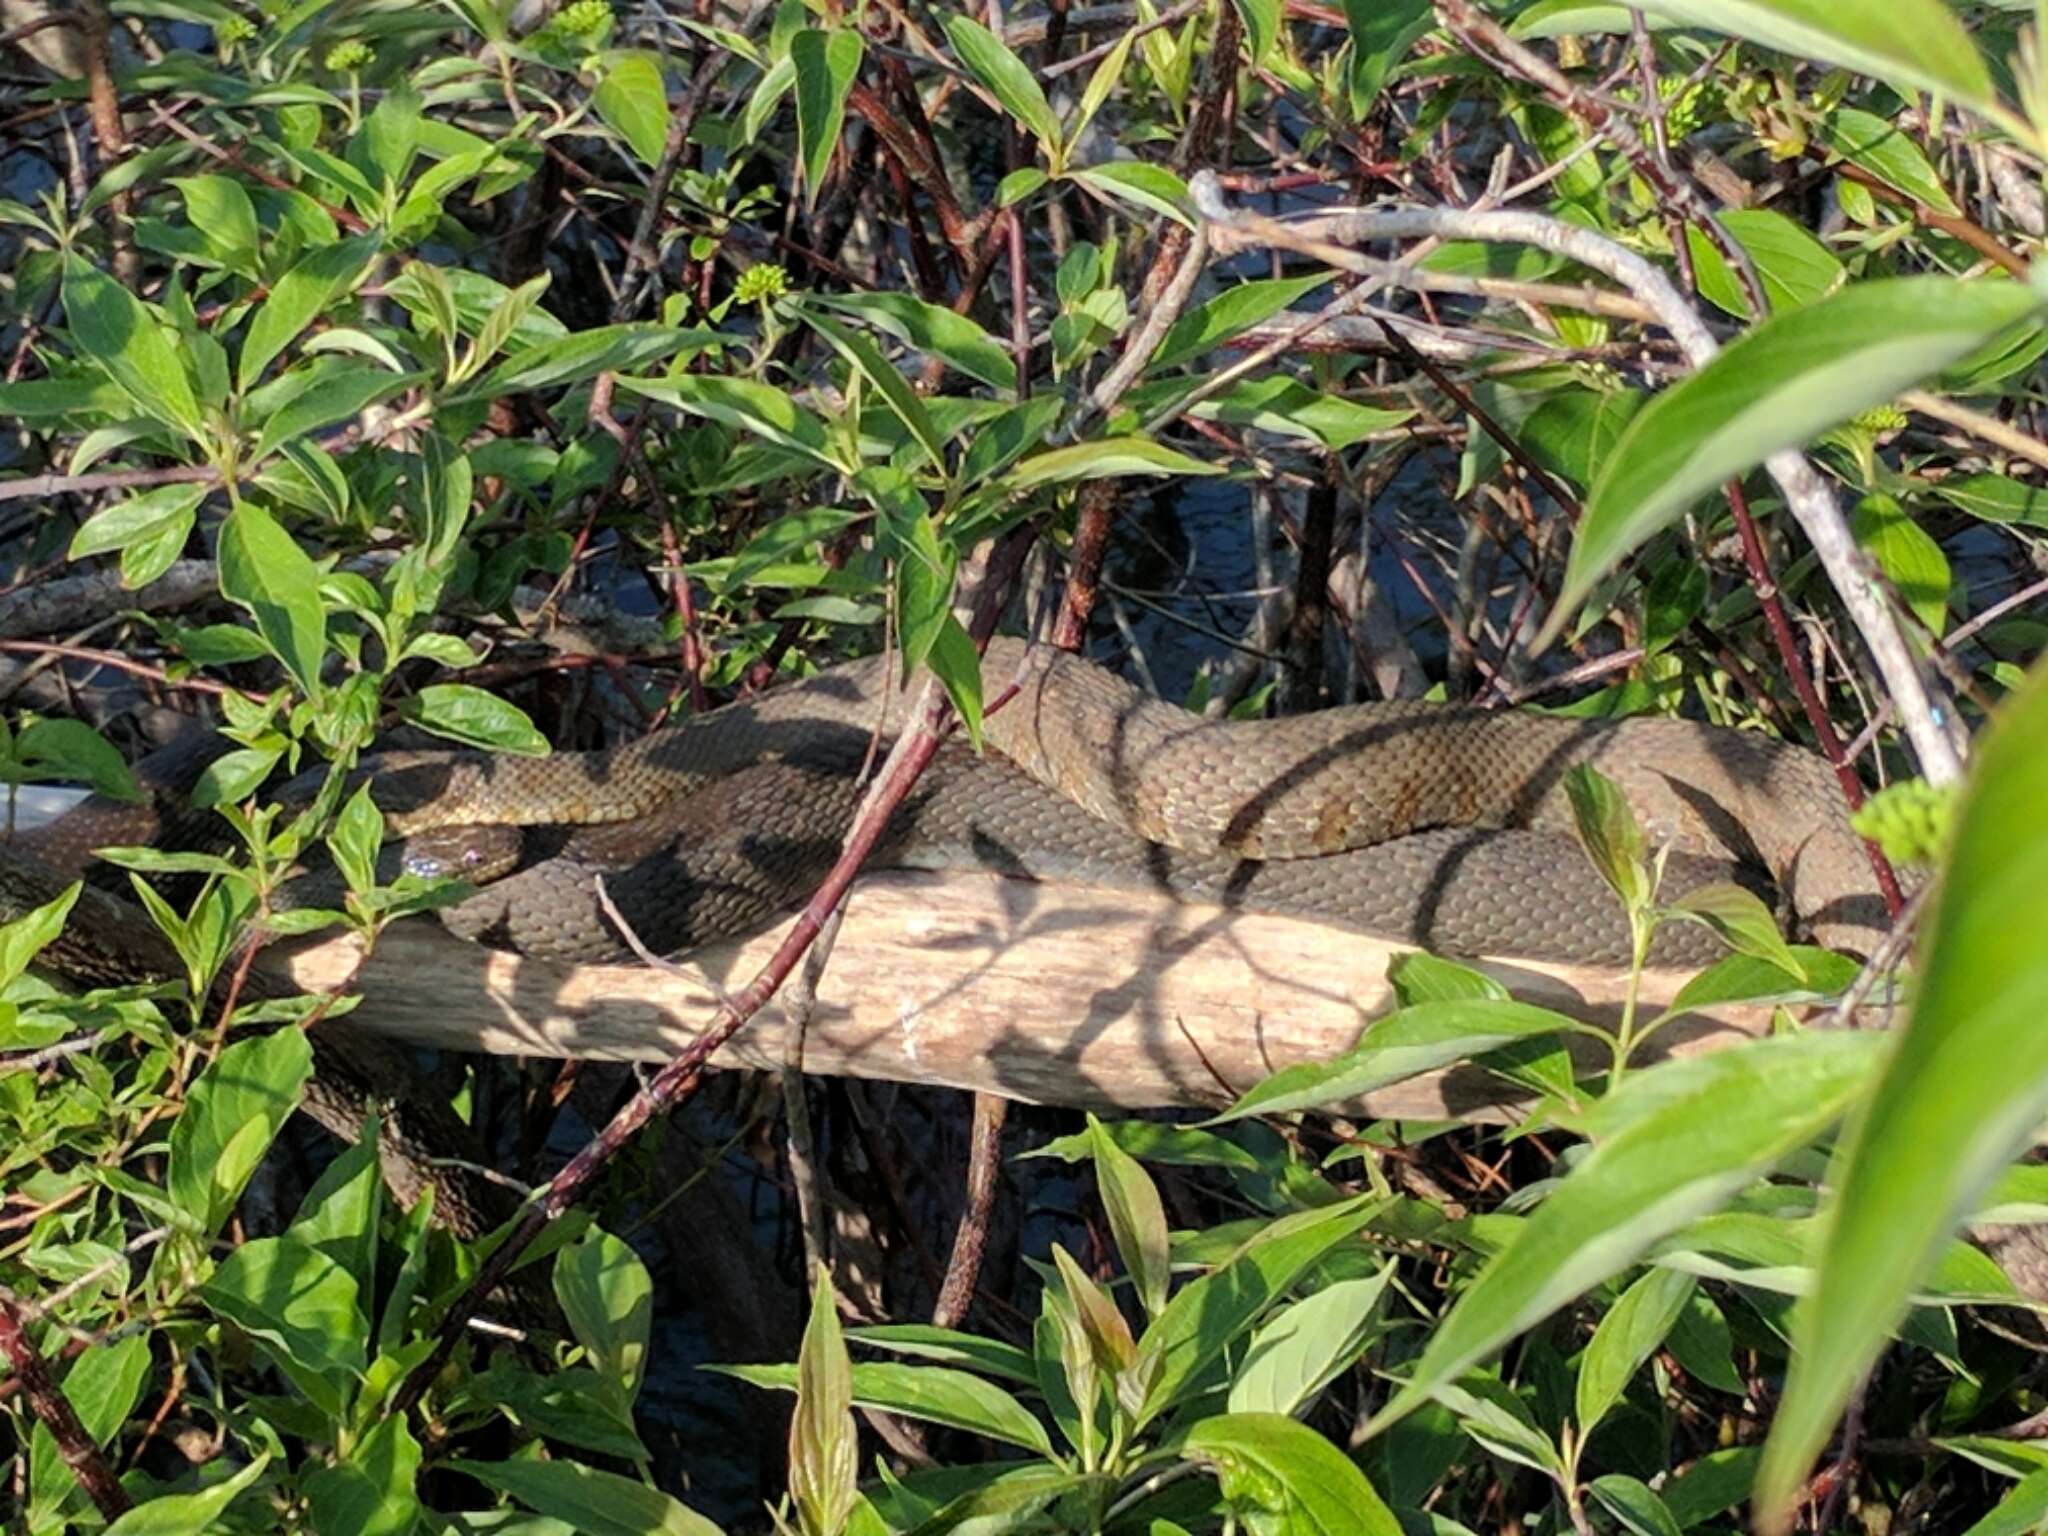 Image of Carolina Water Snake